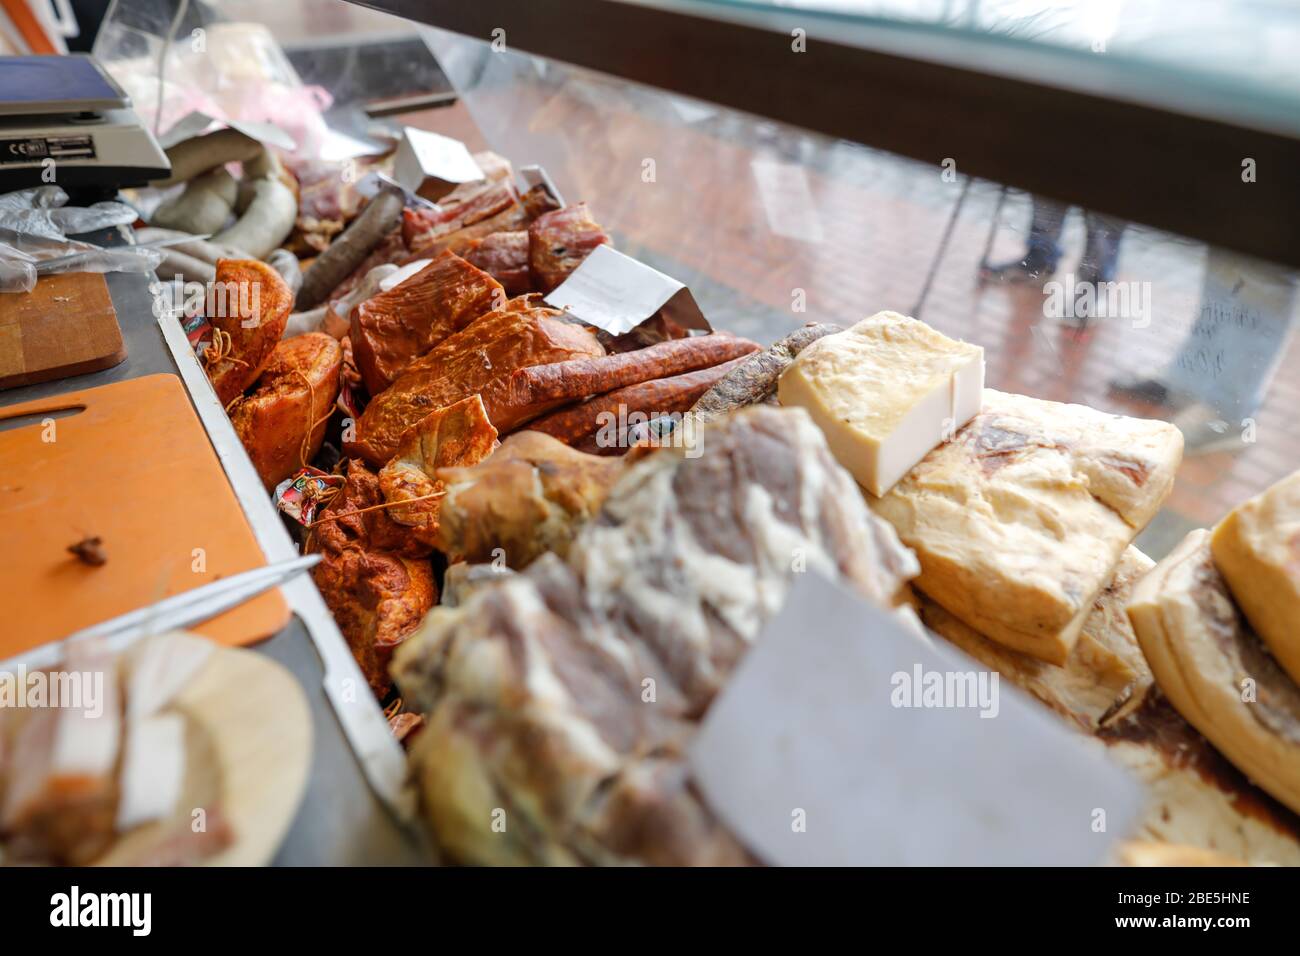 Immagine di profondità di campo (fuoco selettivo) con prodotti tradizionali rumeni a base di carne, principalmente di maiale, in esposizione in un mercato. Foto Stock